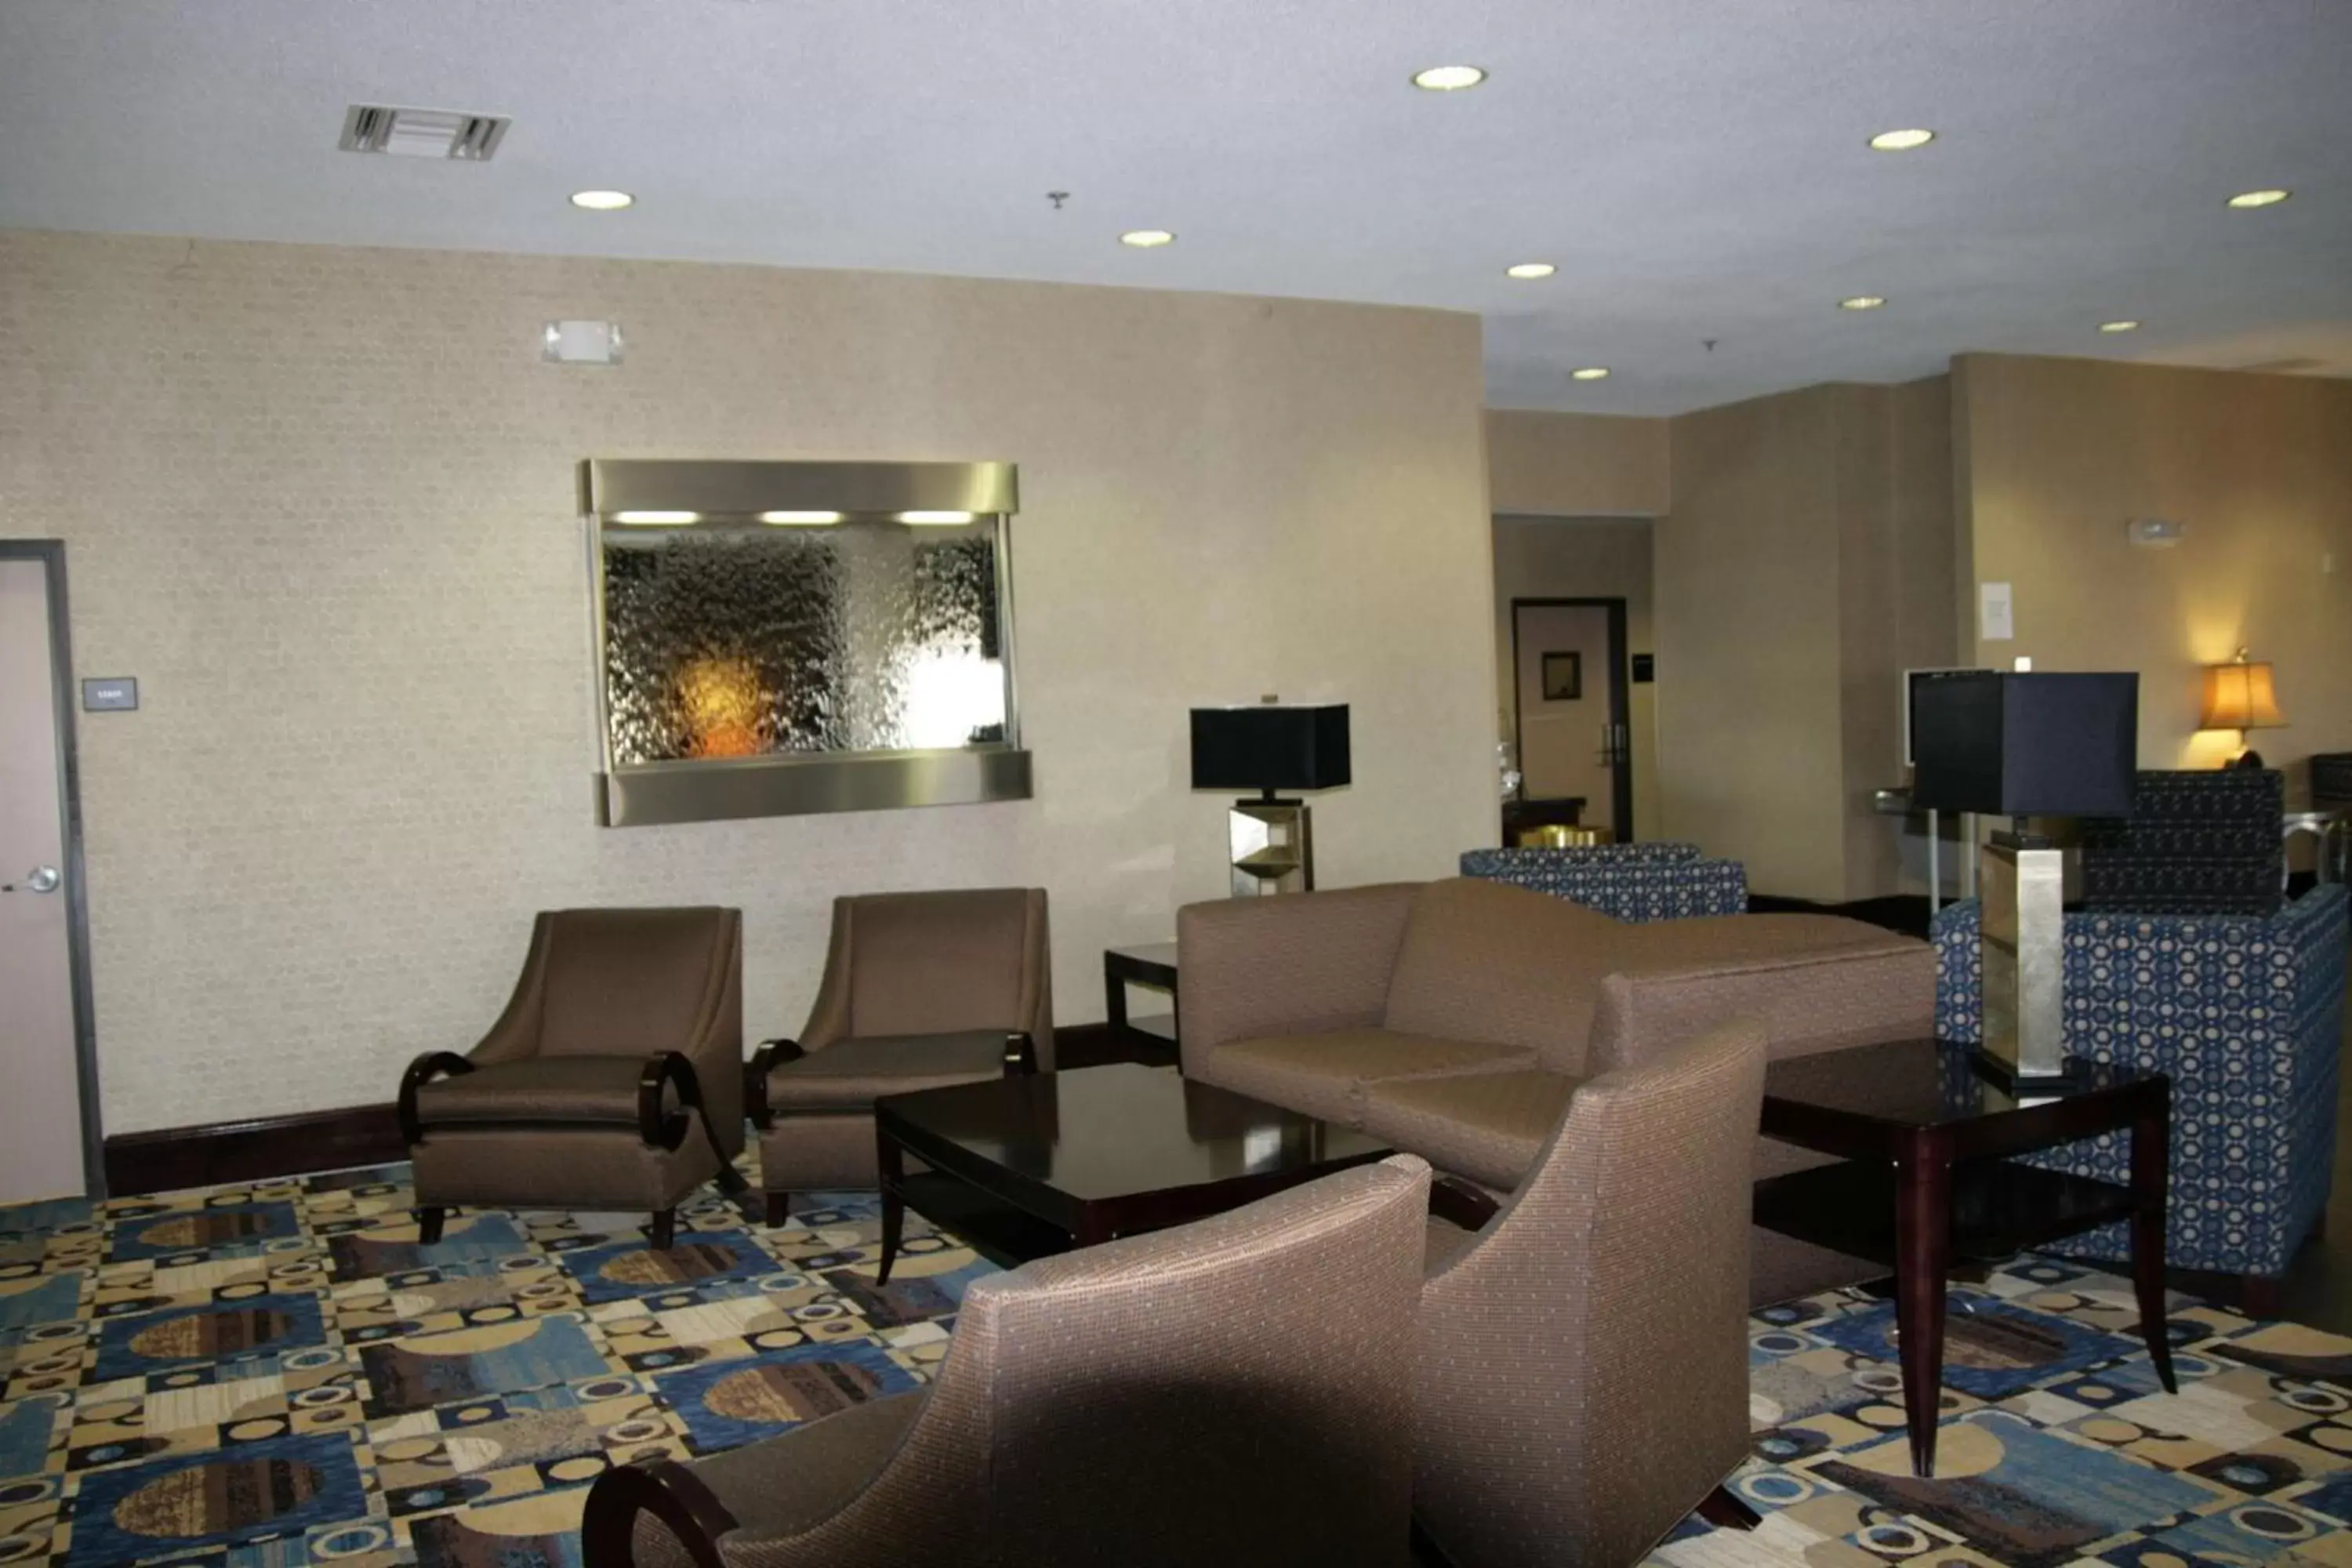 Lobby or reception, Lobby/Reception in Hampton Inn Olathe